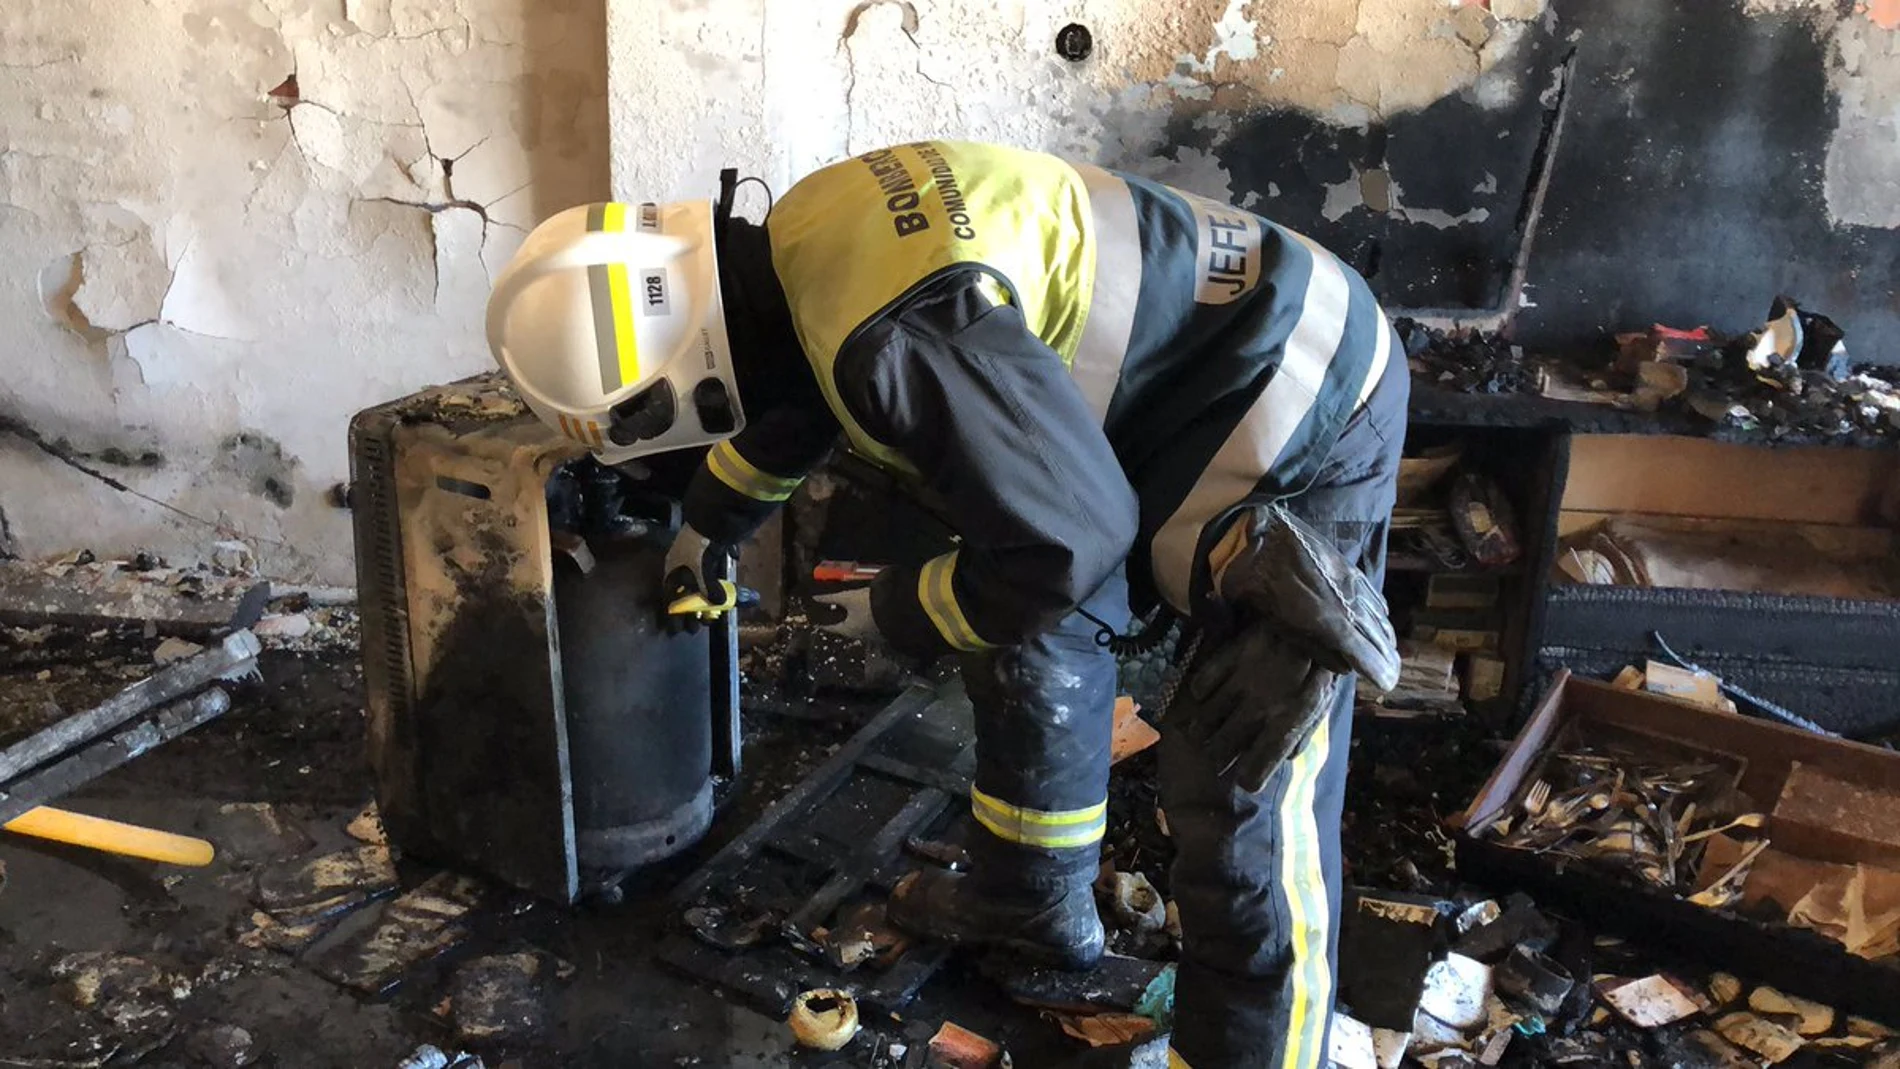 Los bomberos han encontrado a la mujer en una vivienda con una carga de fuego "muy importante"en el interior de un dormitorio